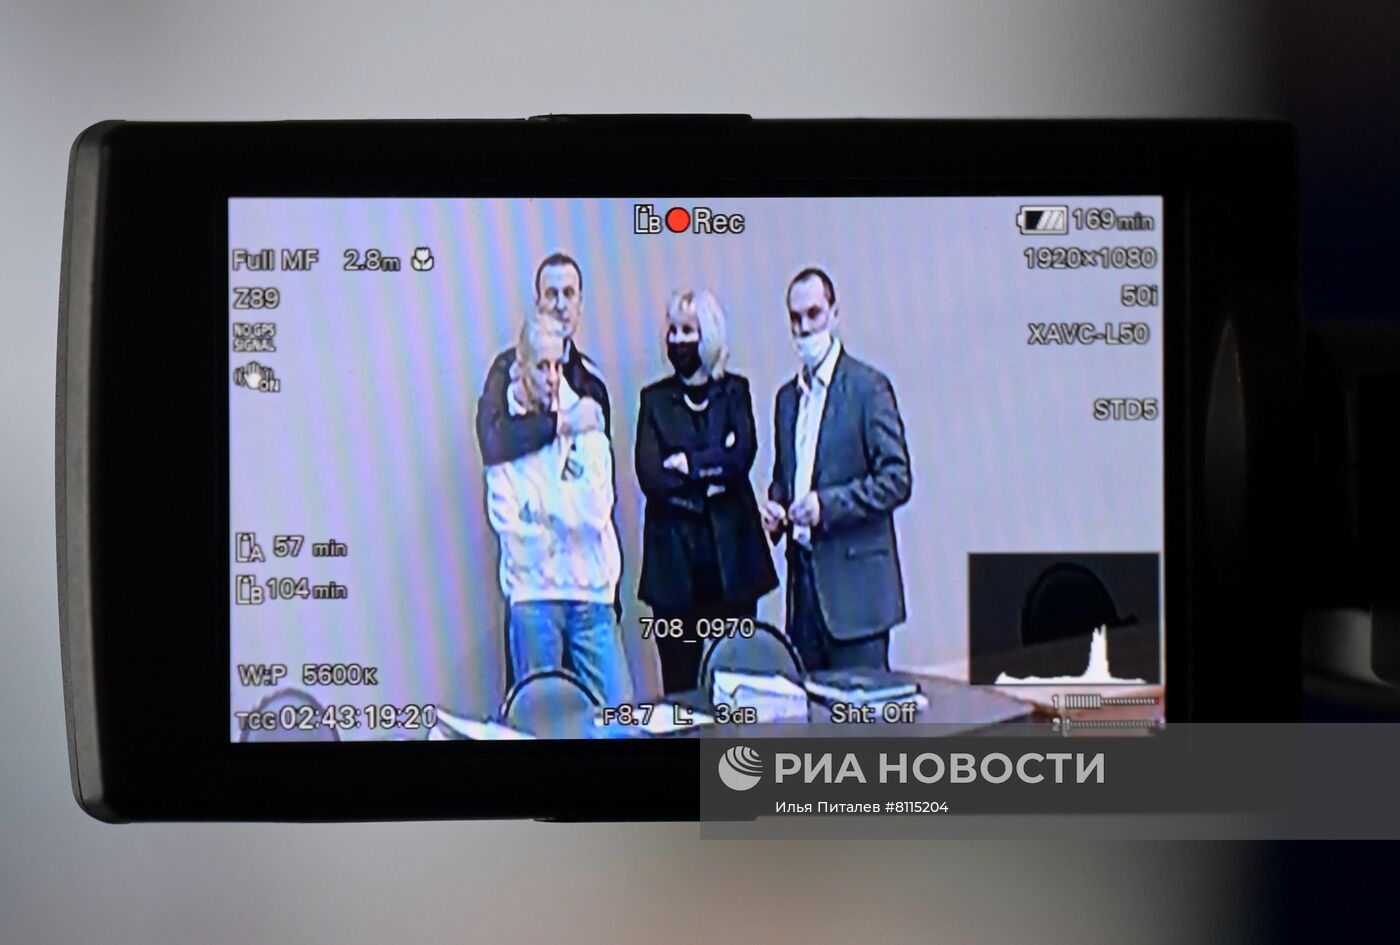 Заседание суда по новому делу против А. Навального 